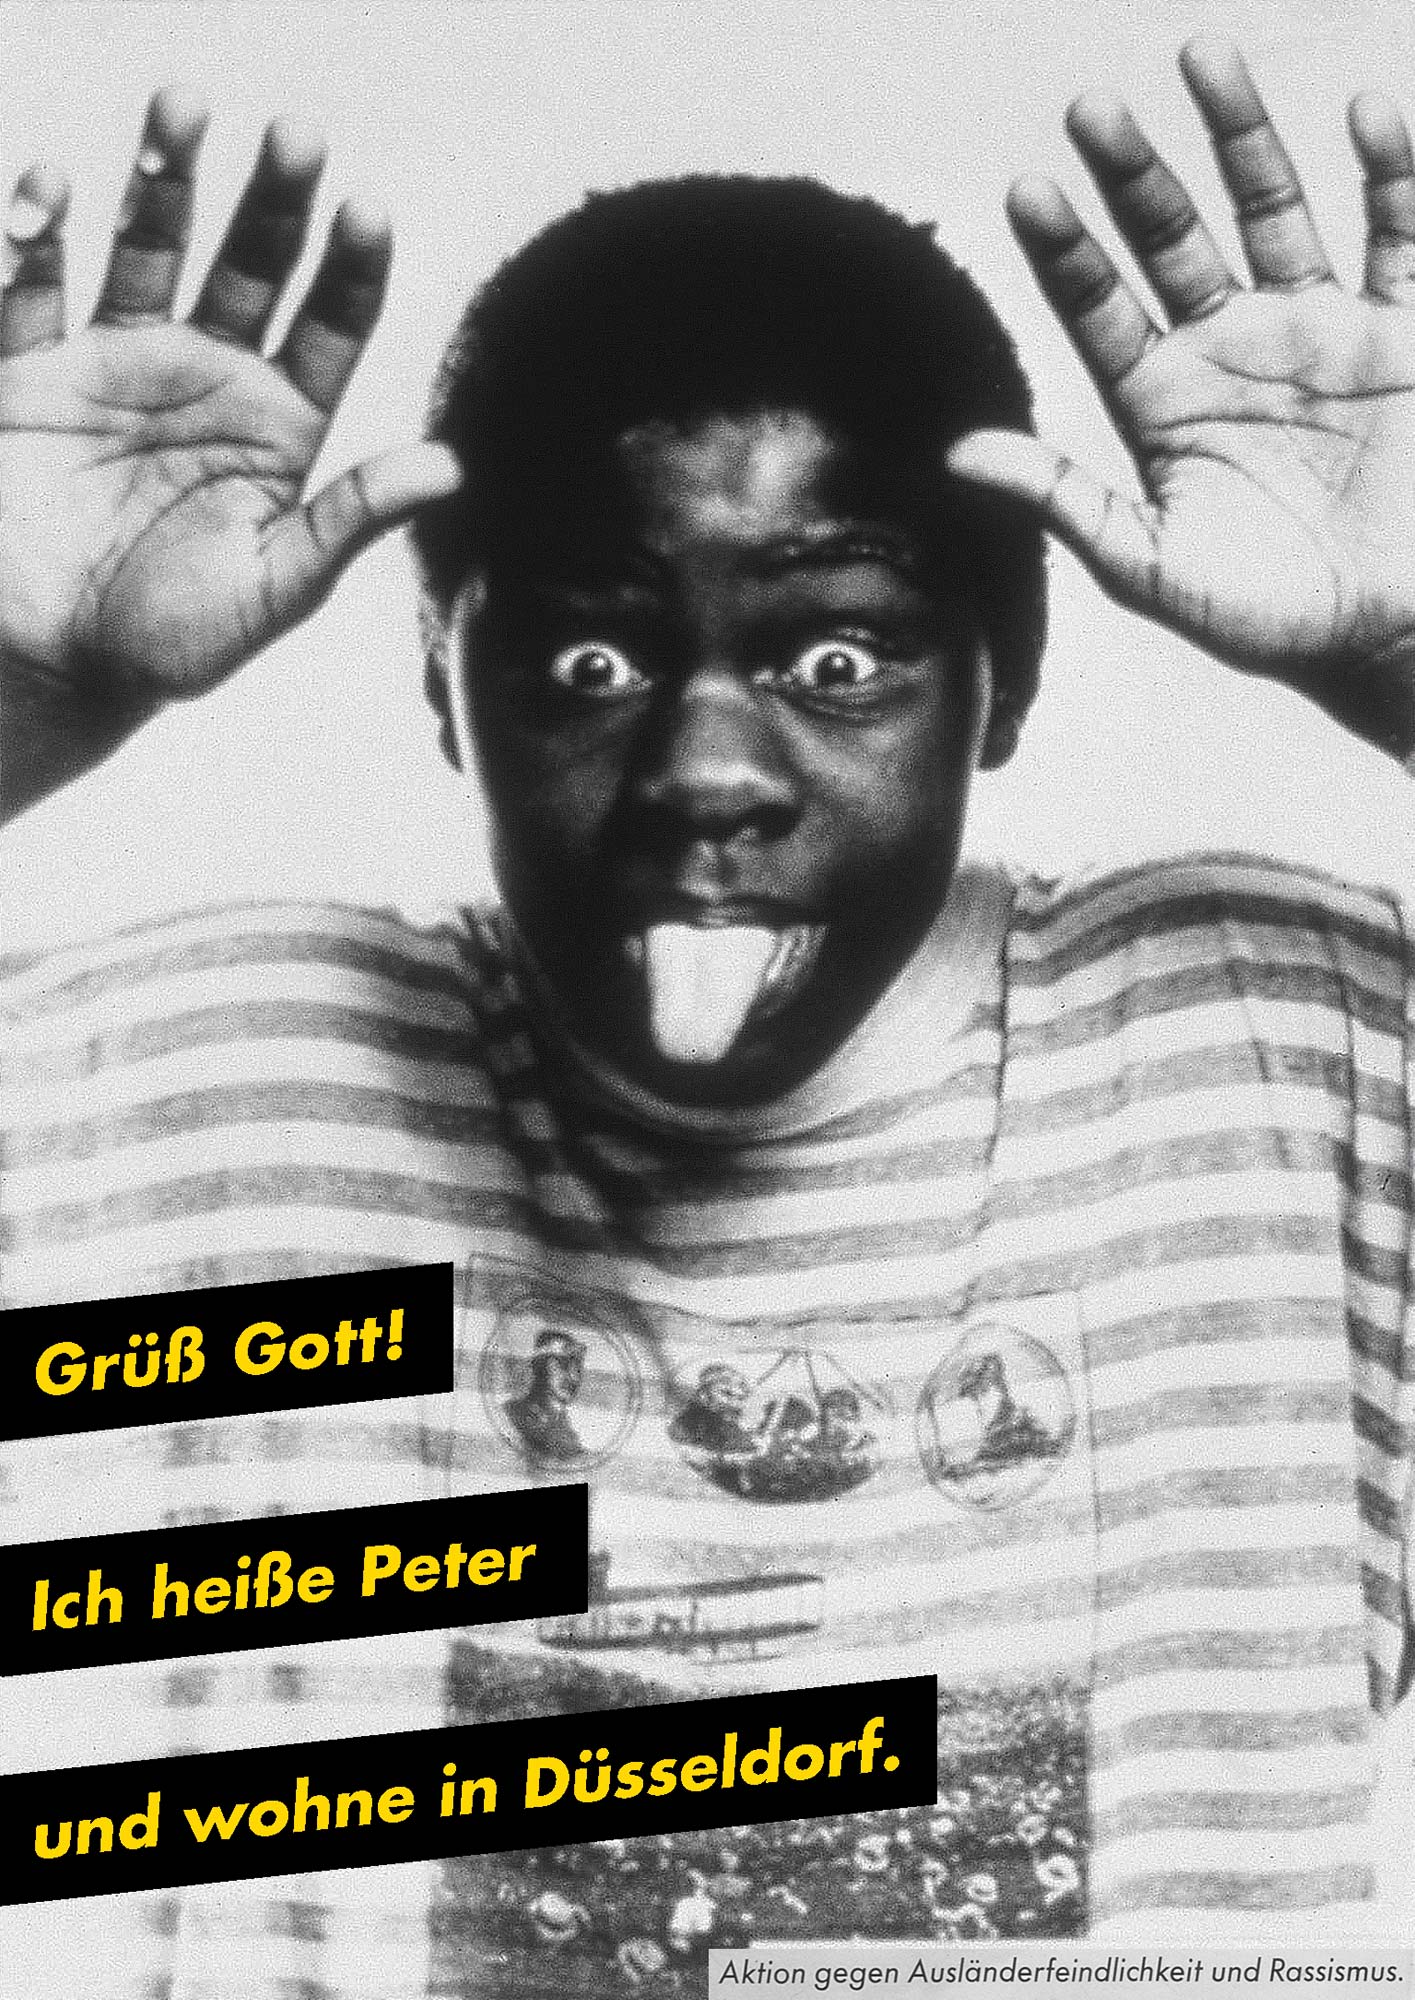 Gestaltet: Eva Cervinka, Udo Bechmann, Betreut: Uwe Loesch, Titel: Grüß Gott. Ich heiße Peter und wohne in Düsseldorf., Jahr: 1989